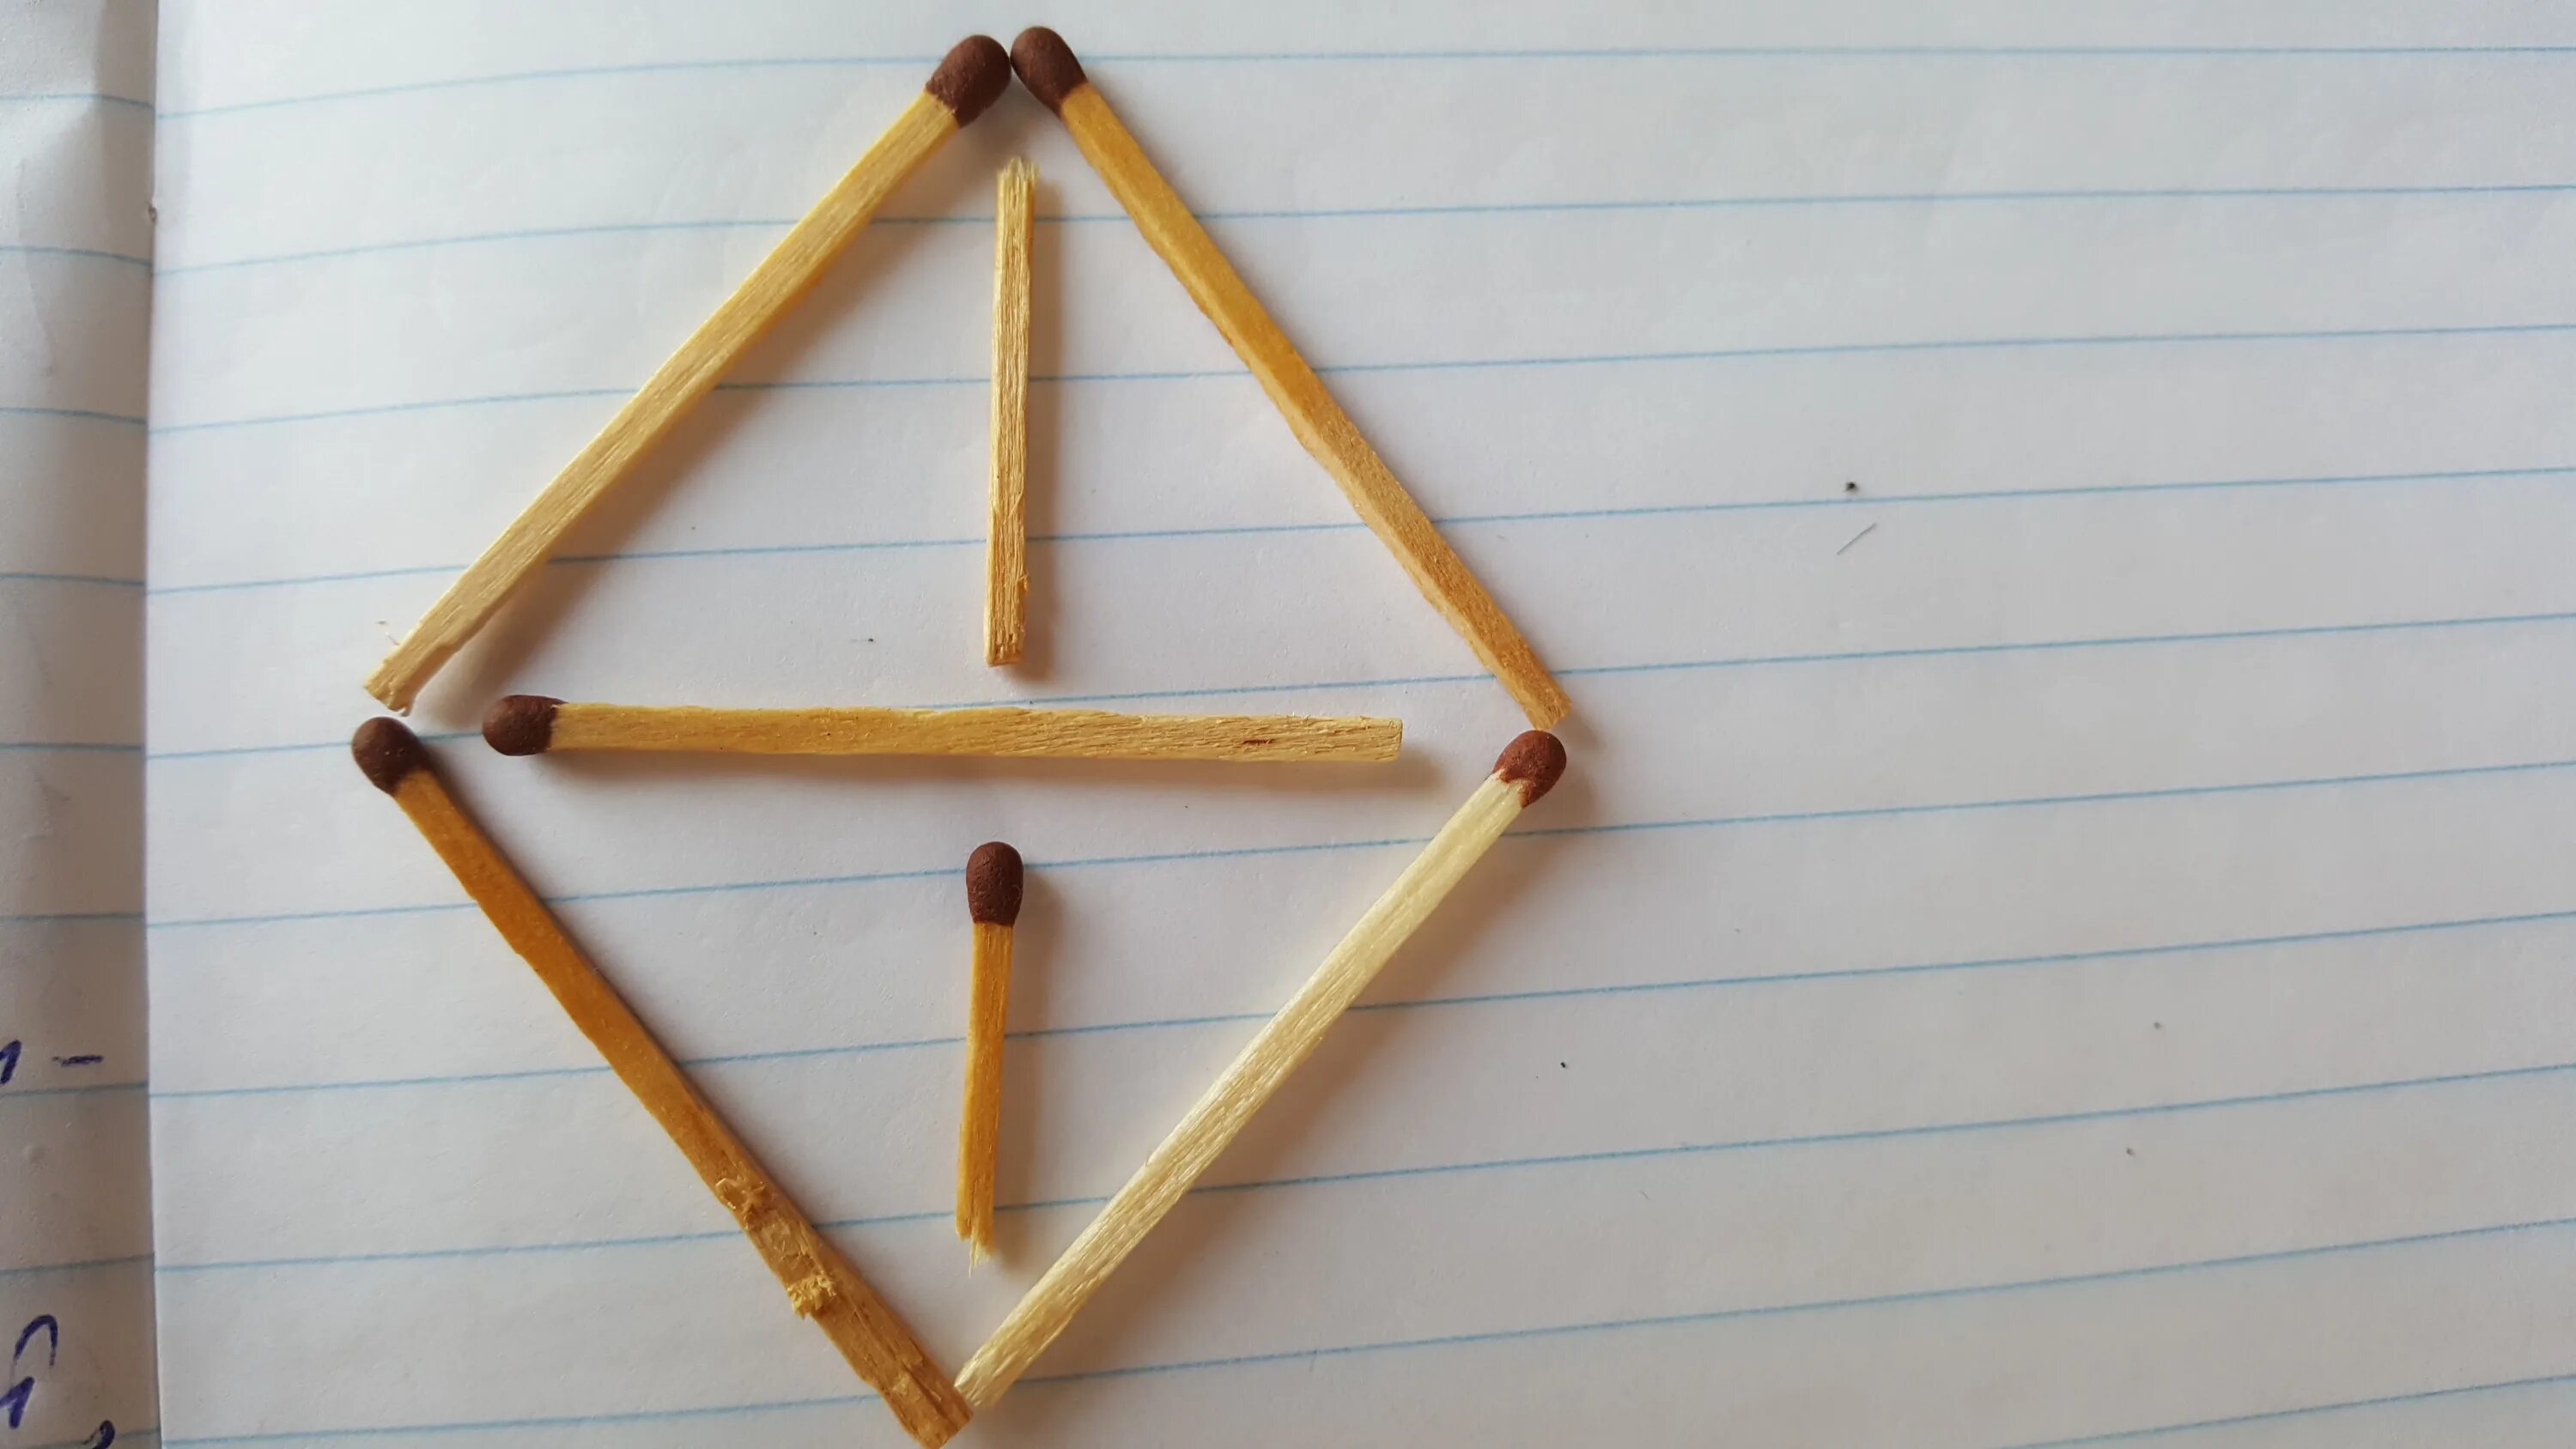 Из 6 спичек можно. 4 Треугольника из 6 спичек. 4 Равносторонних треугольника из 6 спичек. Треугольник из спичек. Пирамида из спичек.